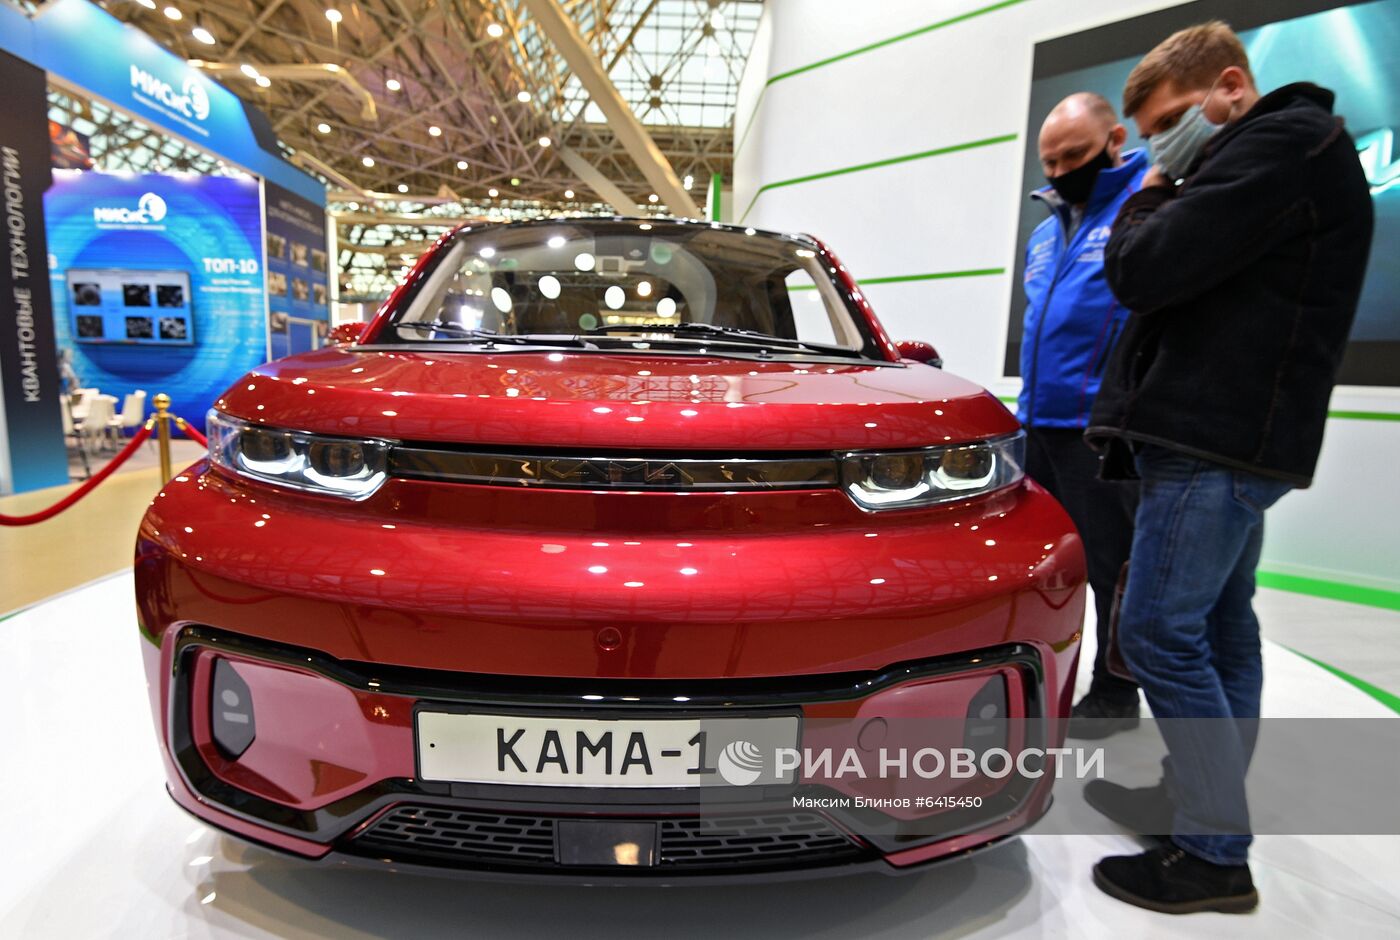 Электромобиль "Кама-1" представлен на выставке ВУЗПРОМЭКСПО 2020 в Москве